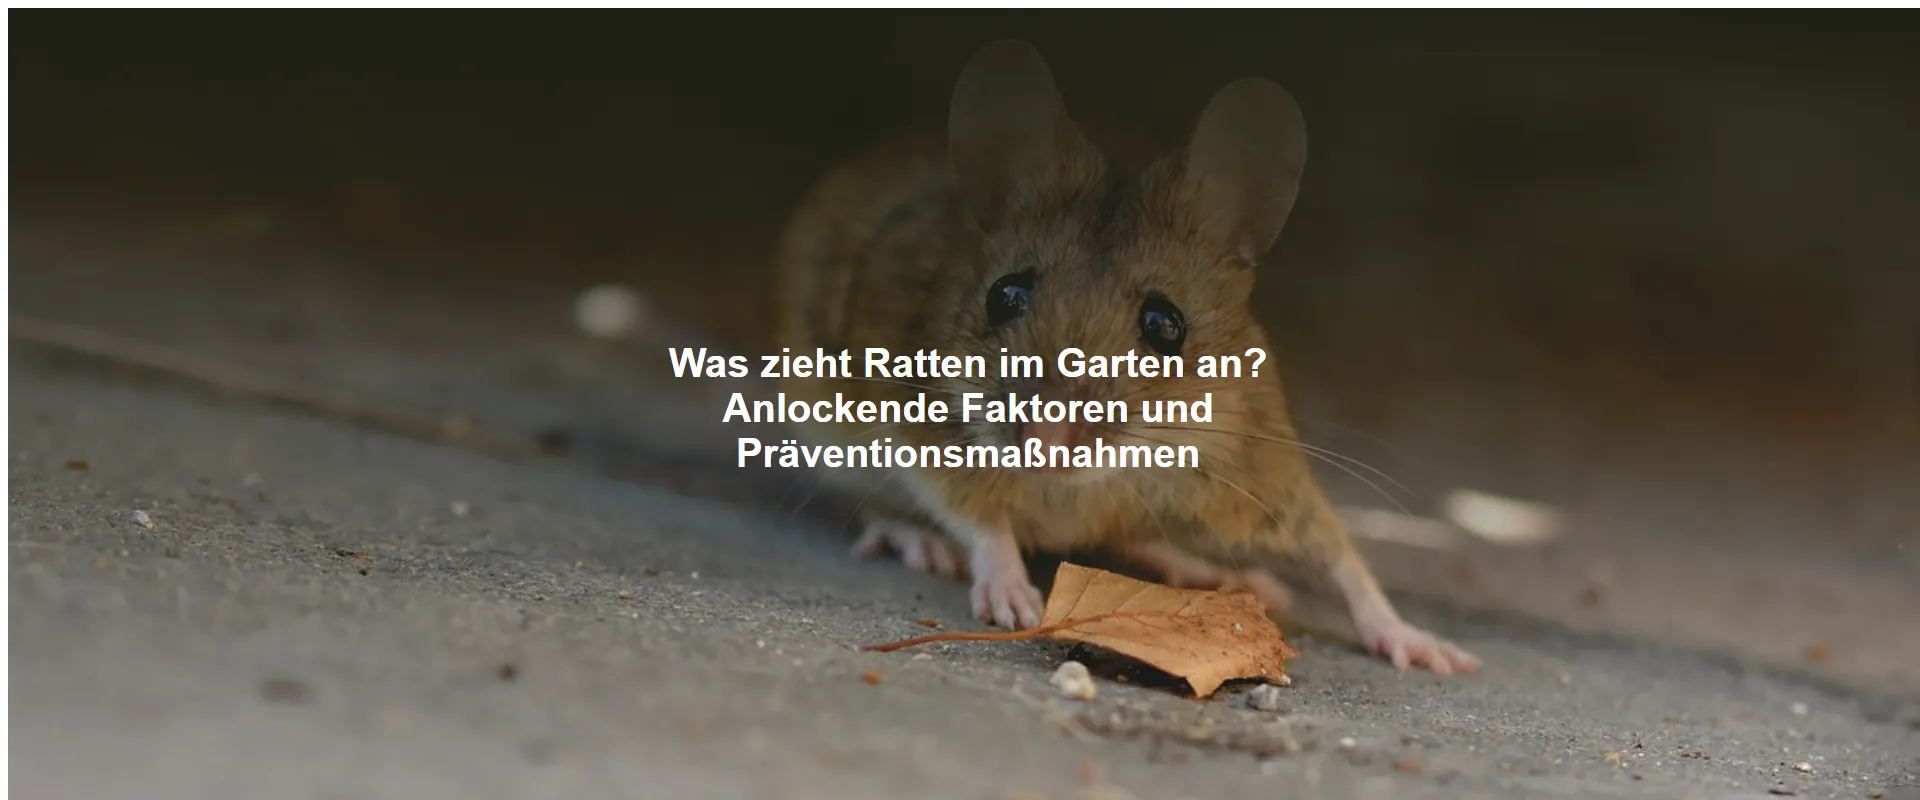 Was zieht Ratten im Garten an? Anlockende Faktoren und Präventionsmaßnahmen